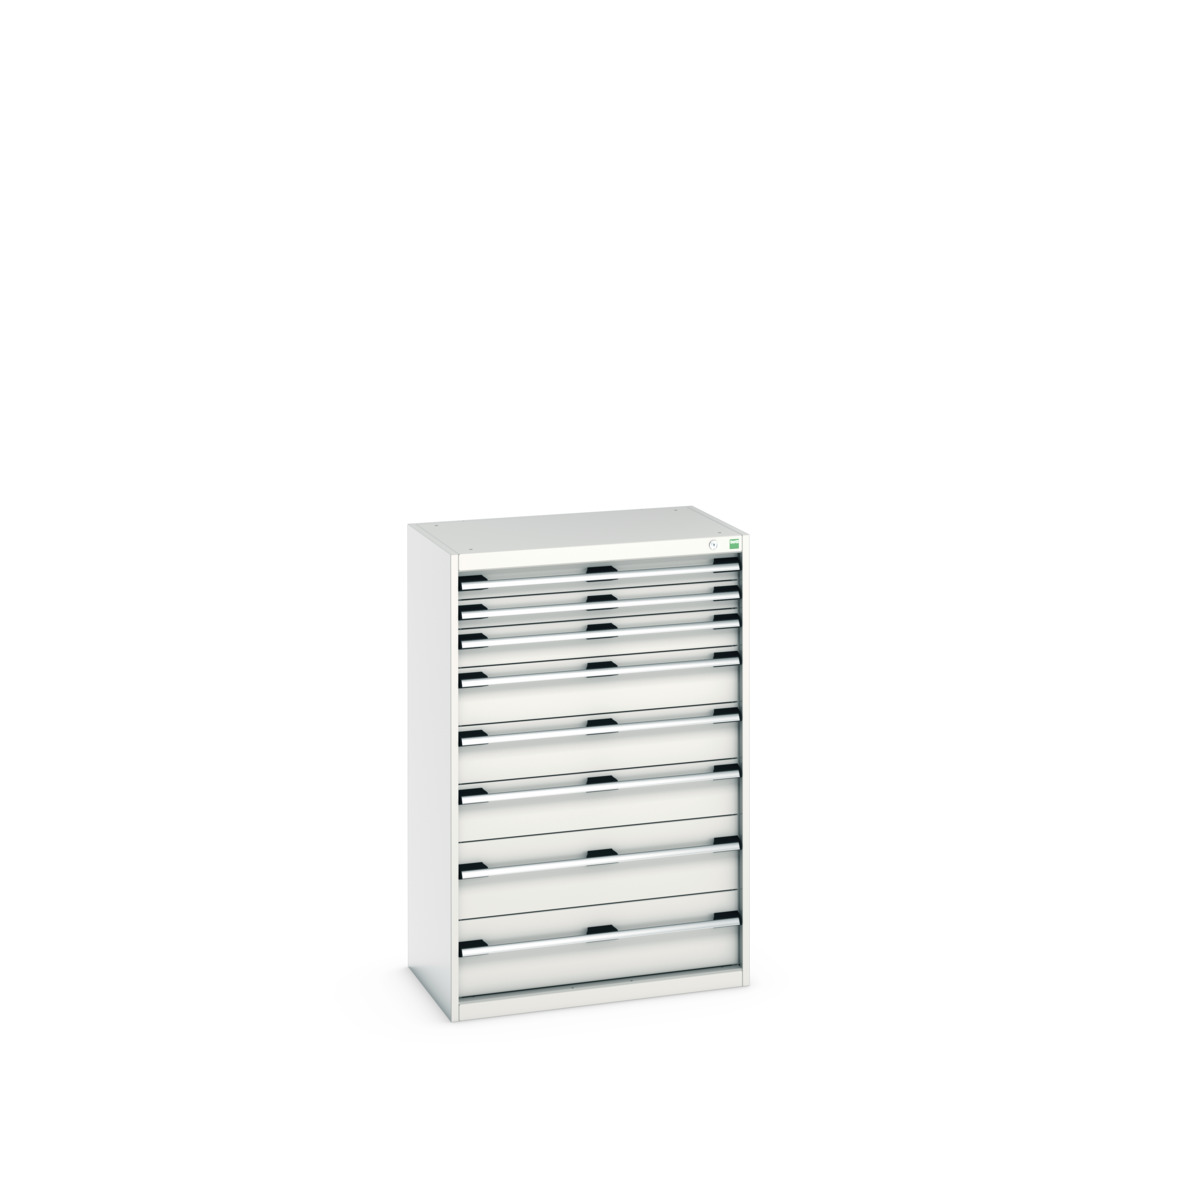 40012106.16V - cubio drawer cabinet